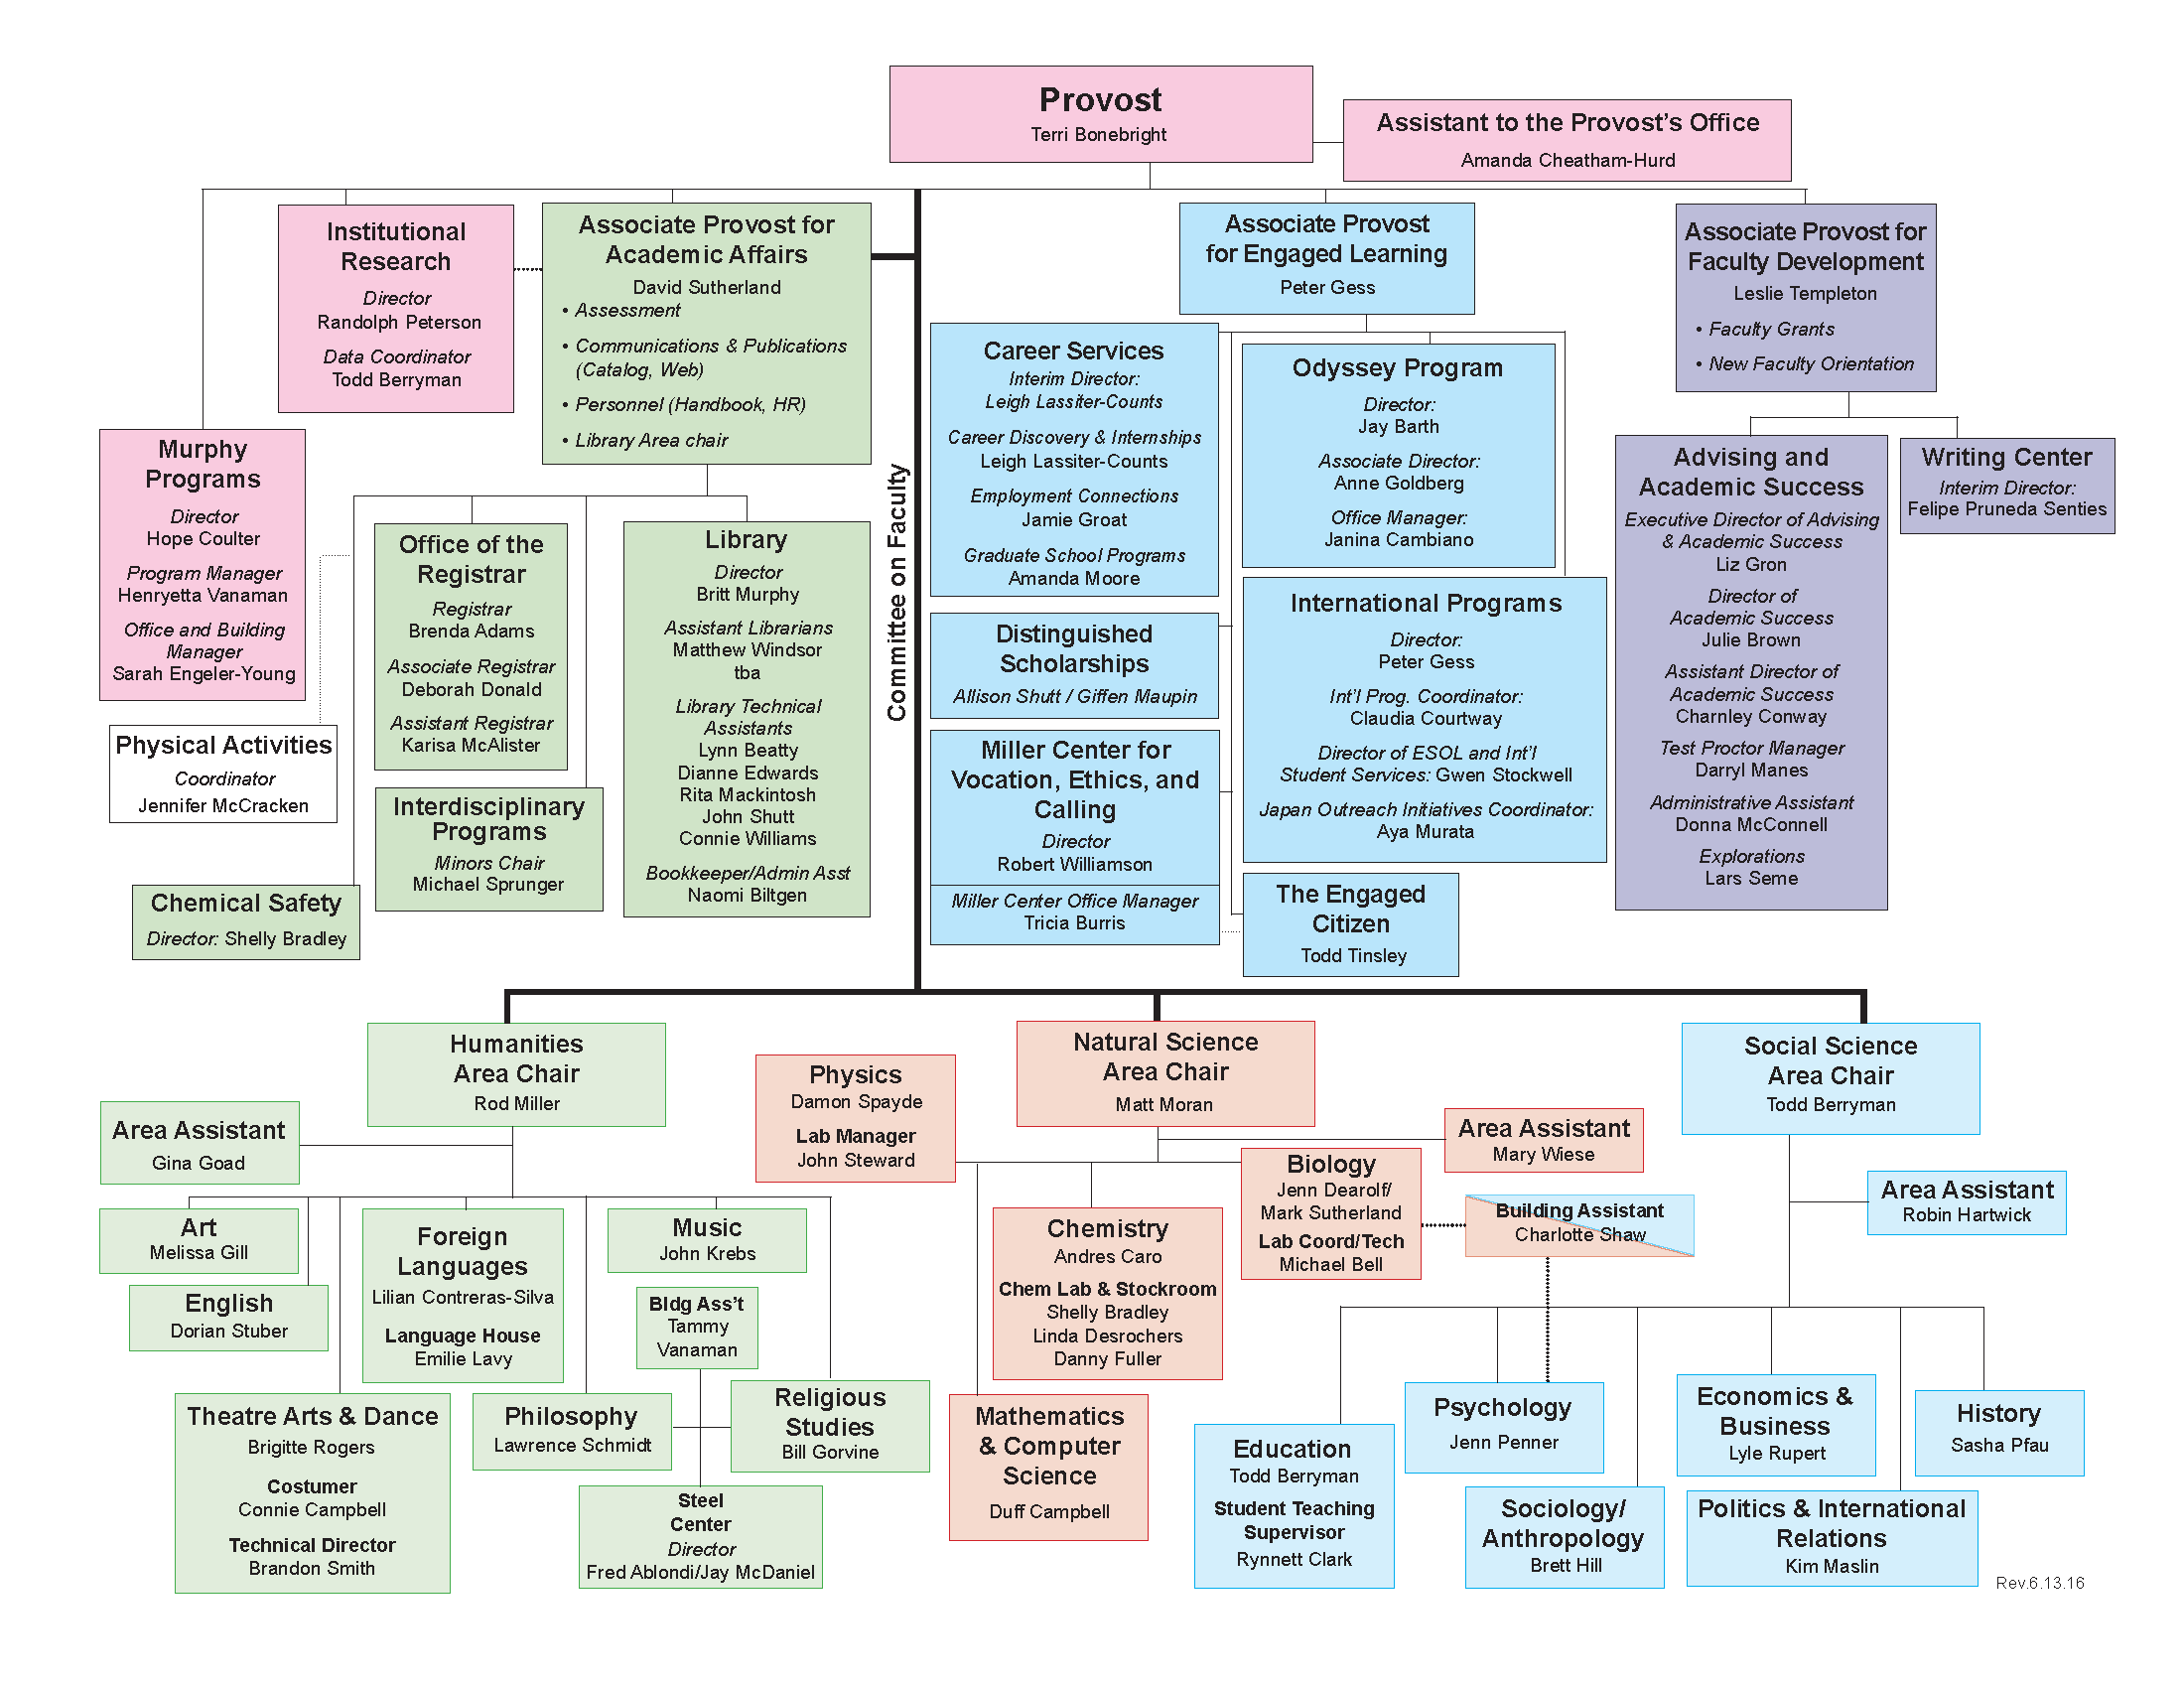 Organizational Chart-Acad Aff rev6_13_16